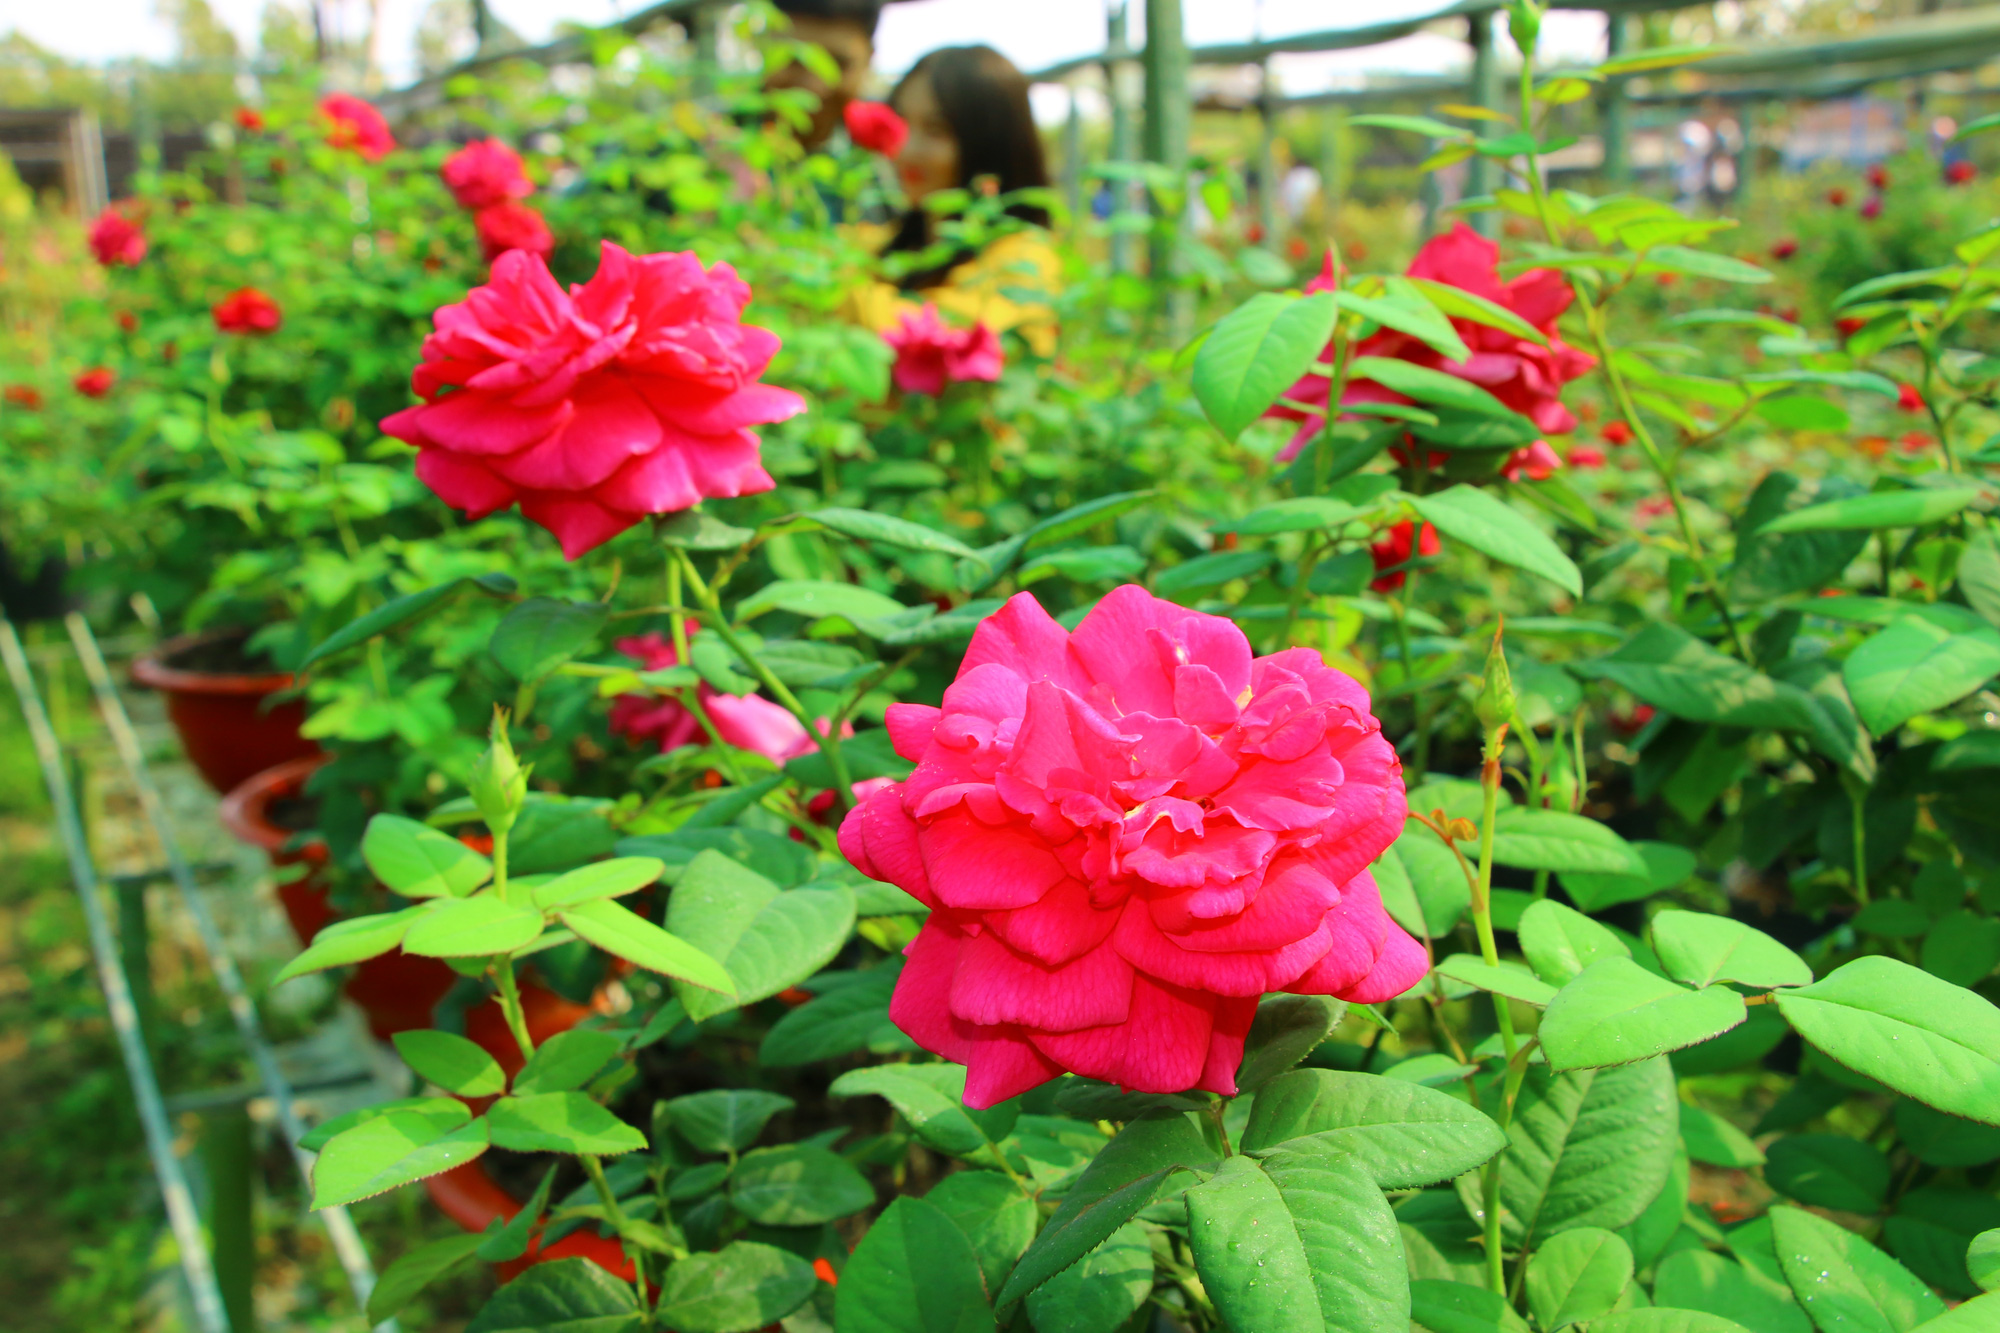 Vườn hoa hồng Pháp là một điểm đến tuyệt vời cho những ai yêu thích hoa hồng. Với đầy đủ các loại hồng từ những màu sắc thường nhật đến những màu sắc hiếm có, bạn sẽ có được trải nghiệm tuyệt vời khi thăm quan khu vườn hoa này. Đừng bỏ lỡ một cơ hội để chiêm ngưỡng những bông hoa hồng đẹp nhất tại Pháp.